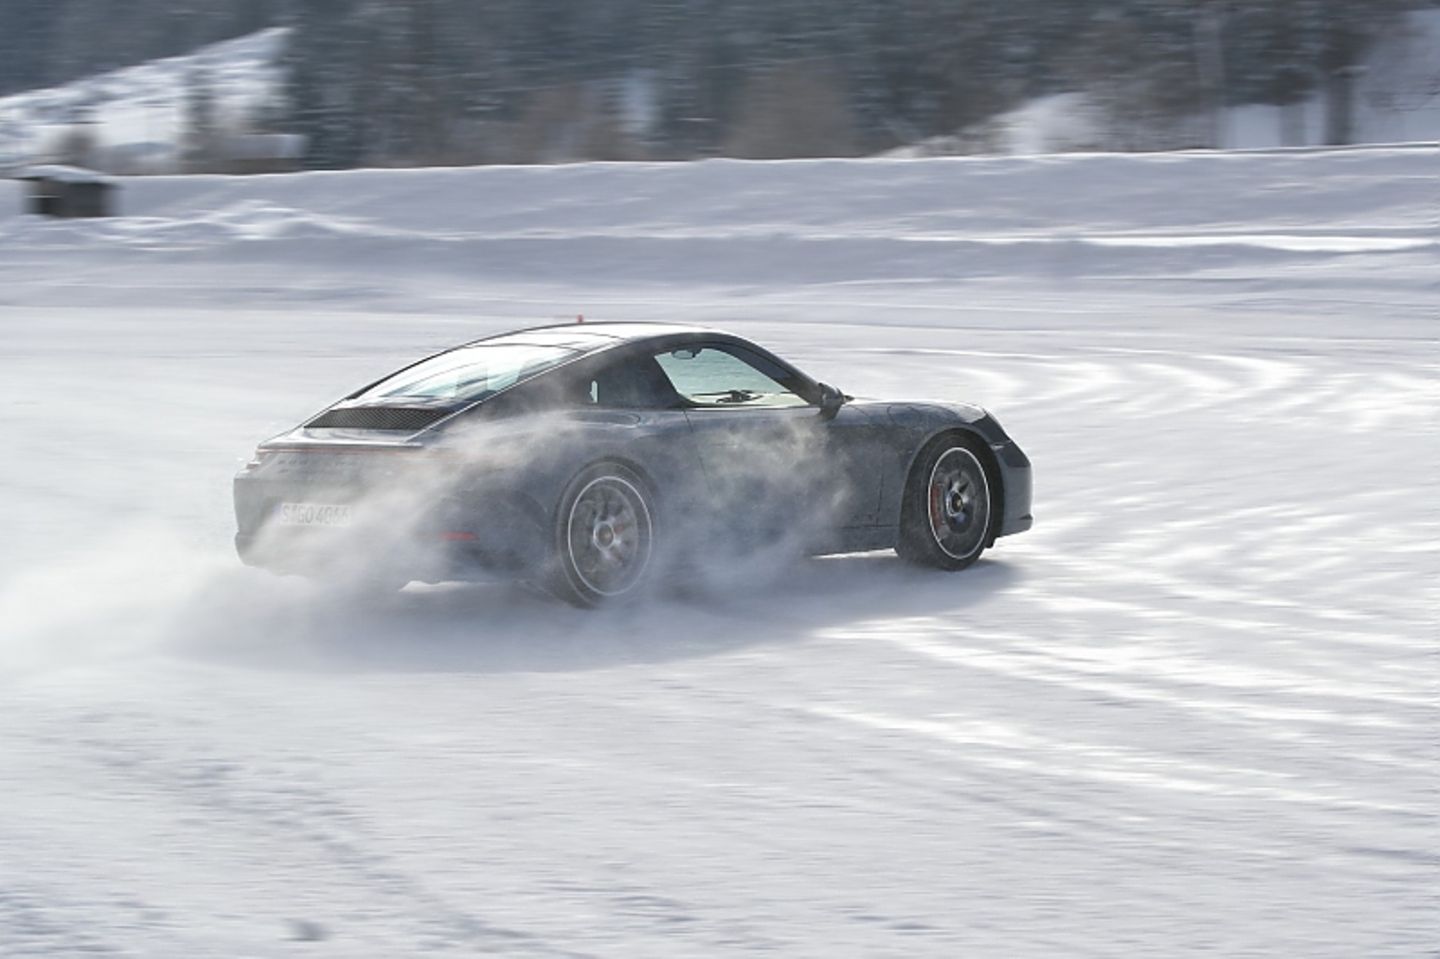 Auto fahren im Winter: So meistern Sie Schnee und Eis